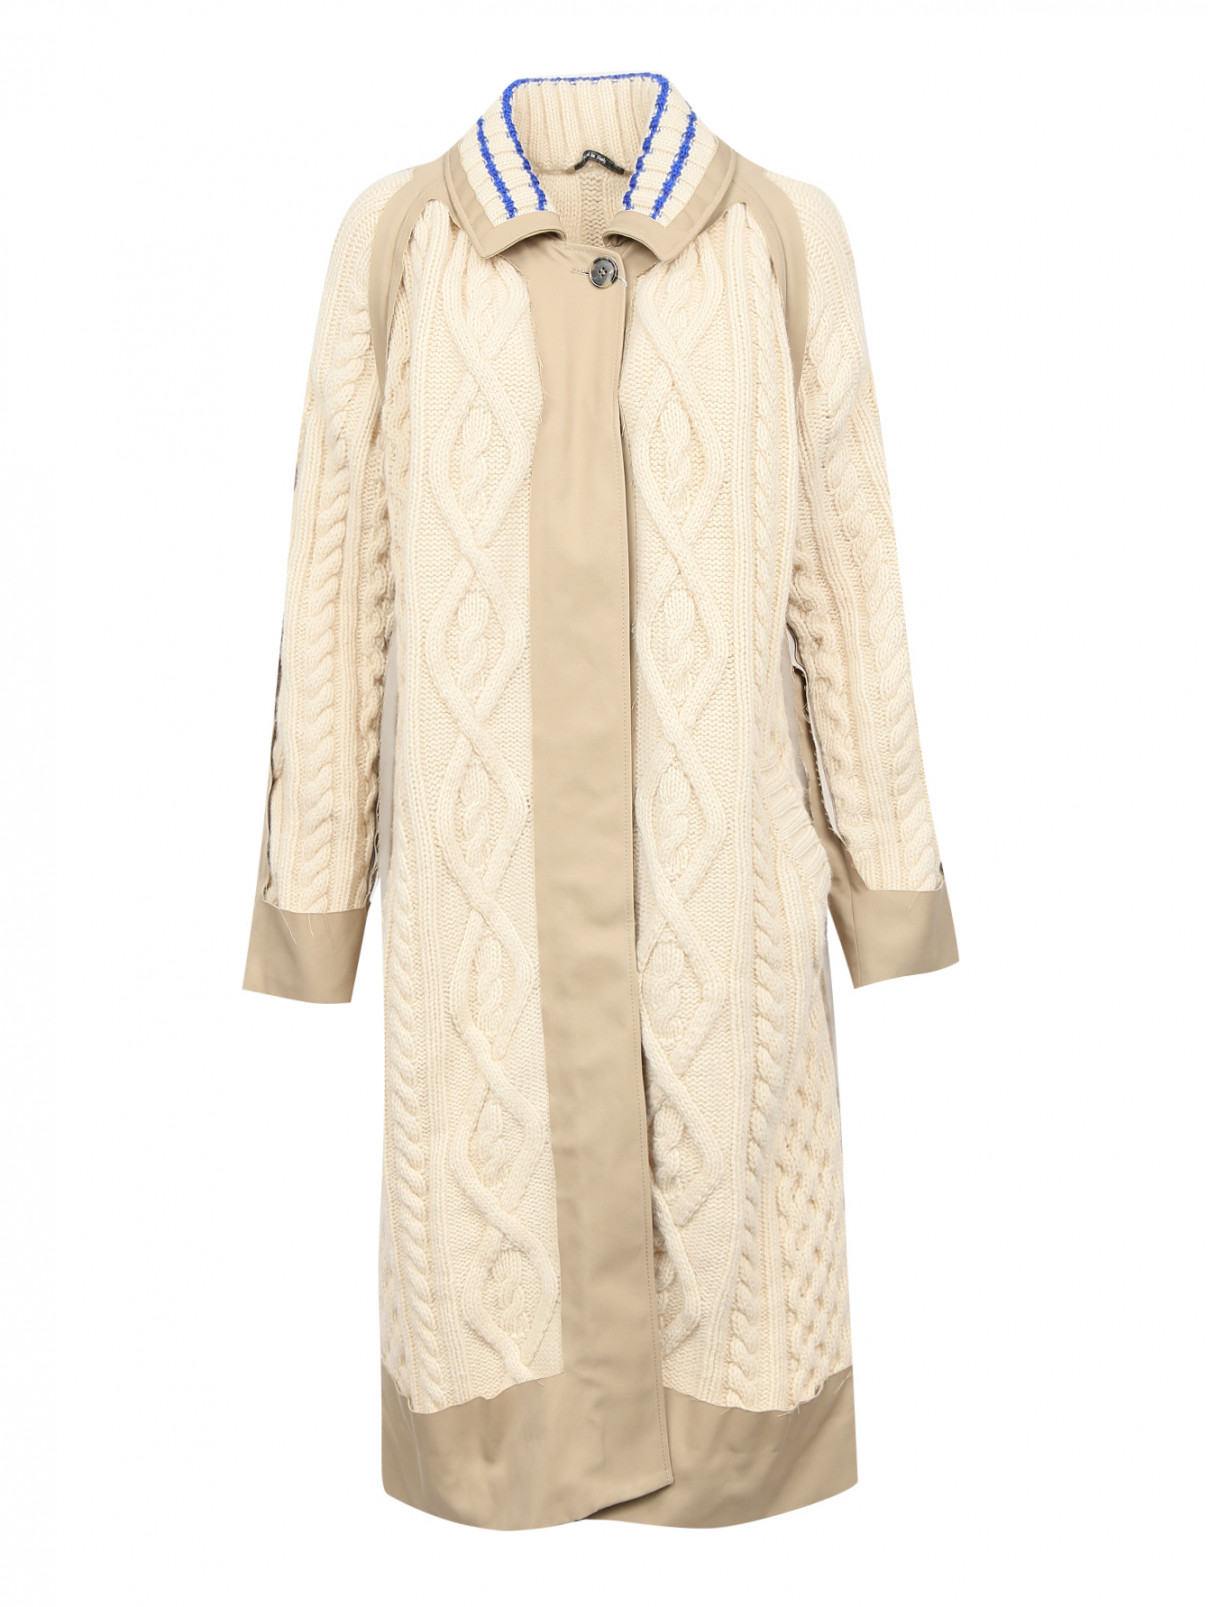 Пальто крупной вязки с отделкой тканью Maison Margiela  –  Общий вид  – Цвет:  Белый